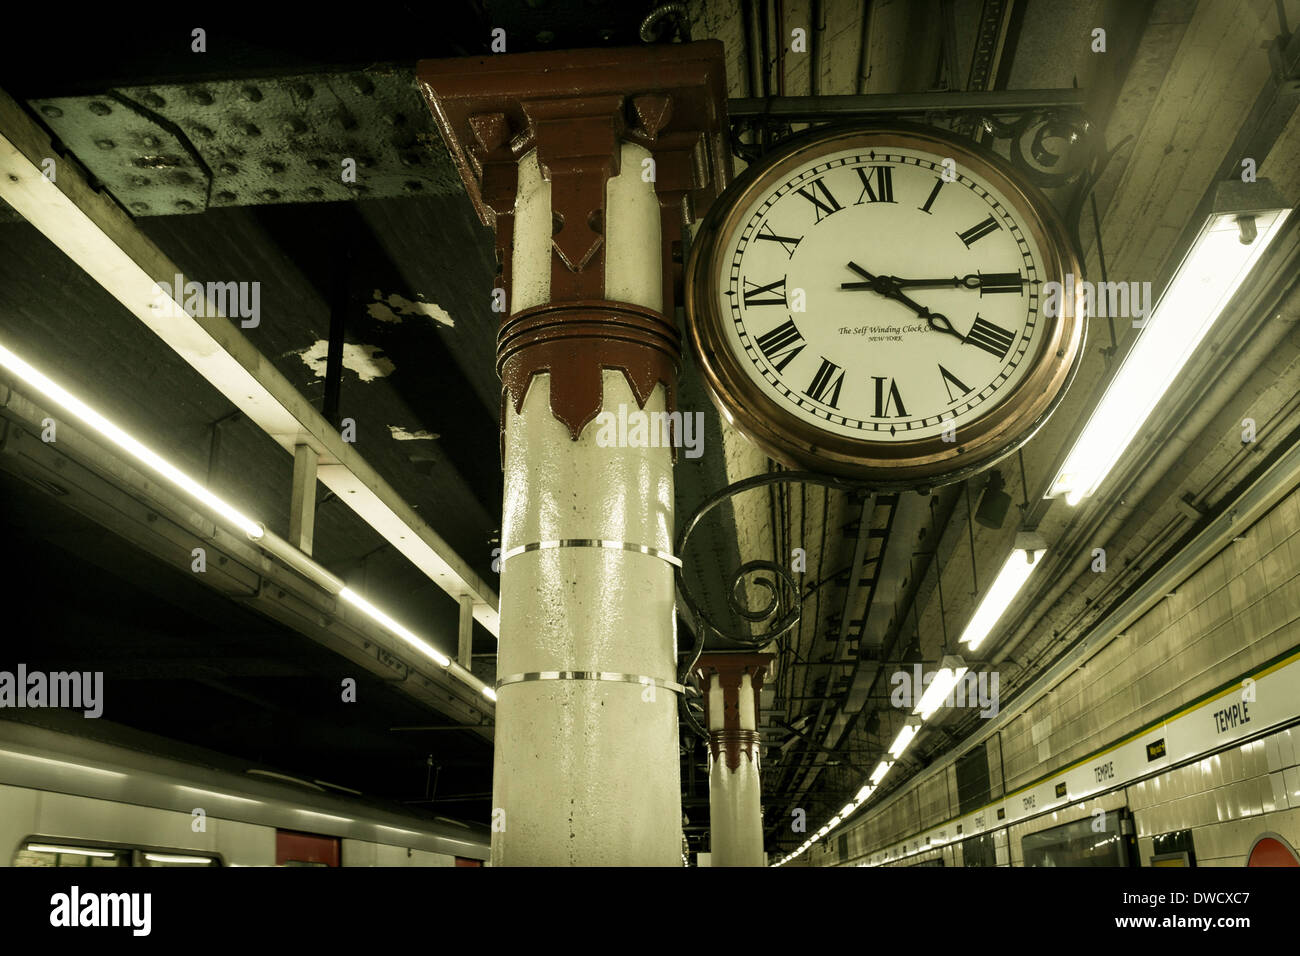 Réveil de la plate-forme, la station de métro Temple, Londres, UK Banque D'Images